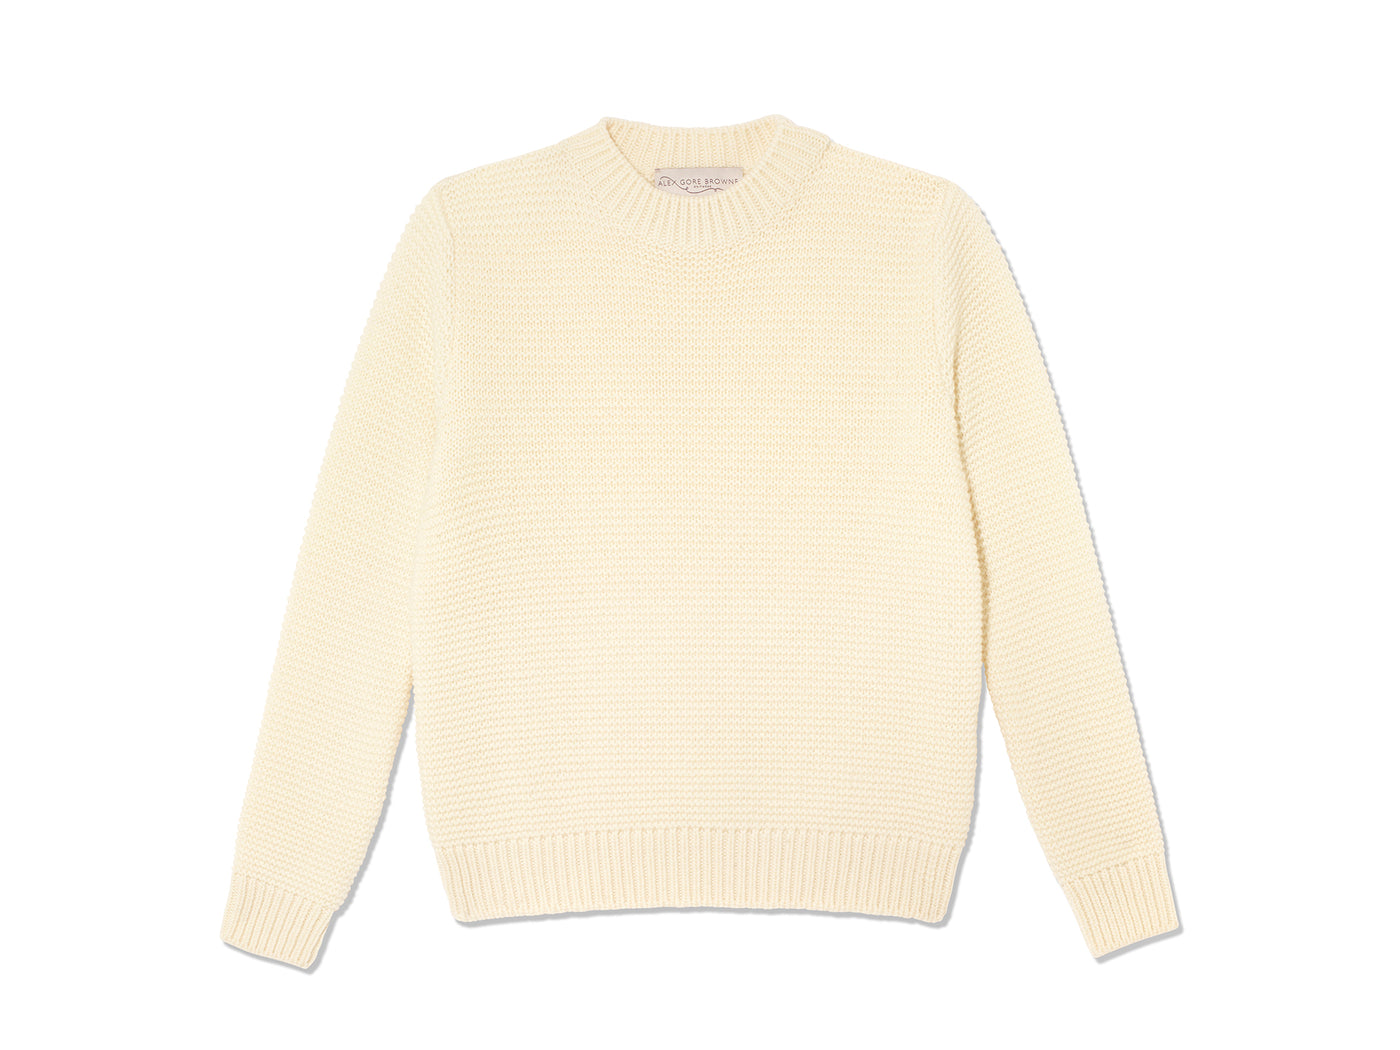 Purl Stitch Sweater - Cream